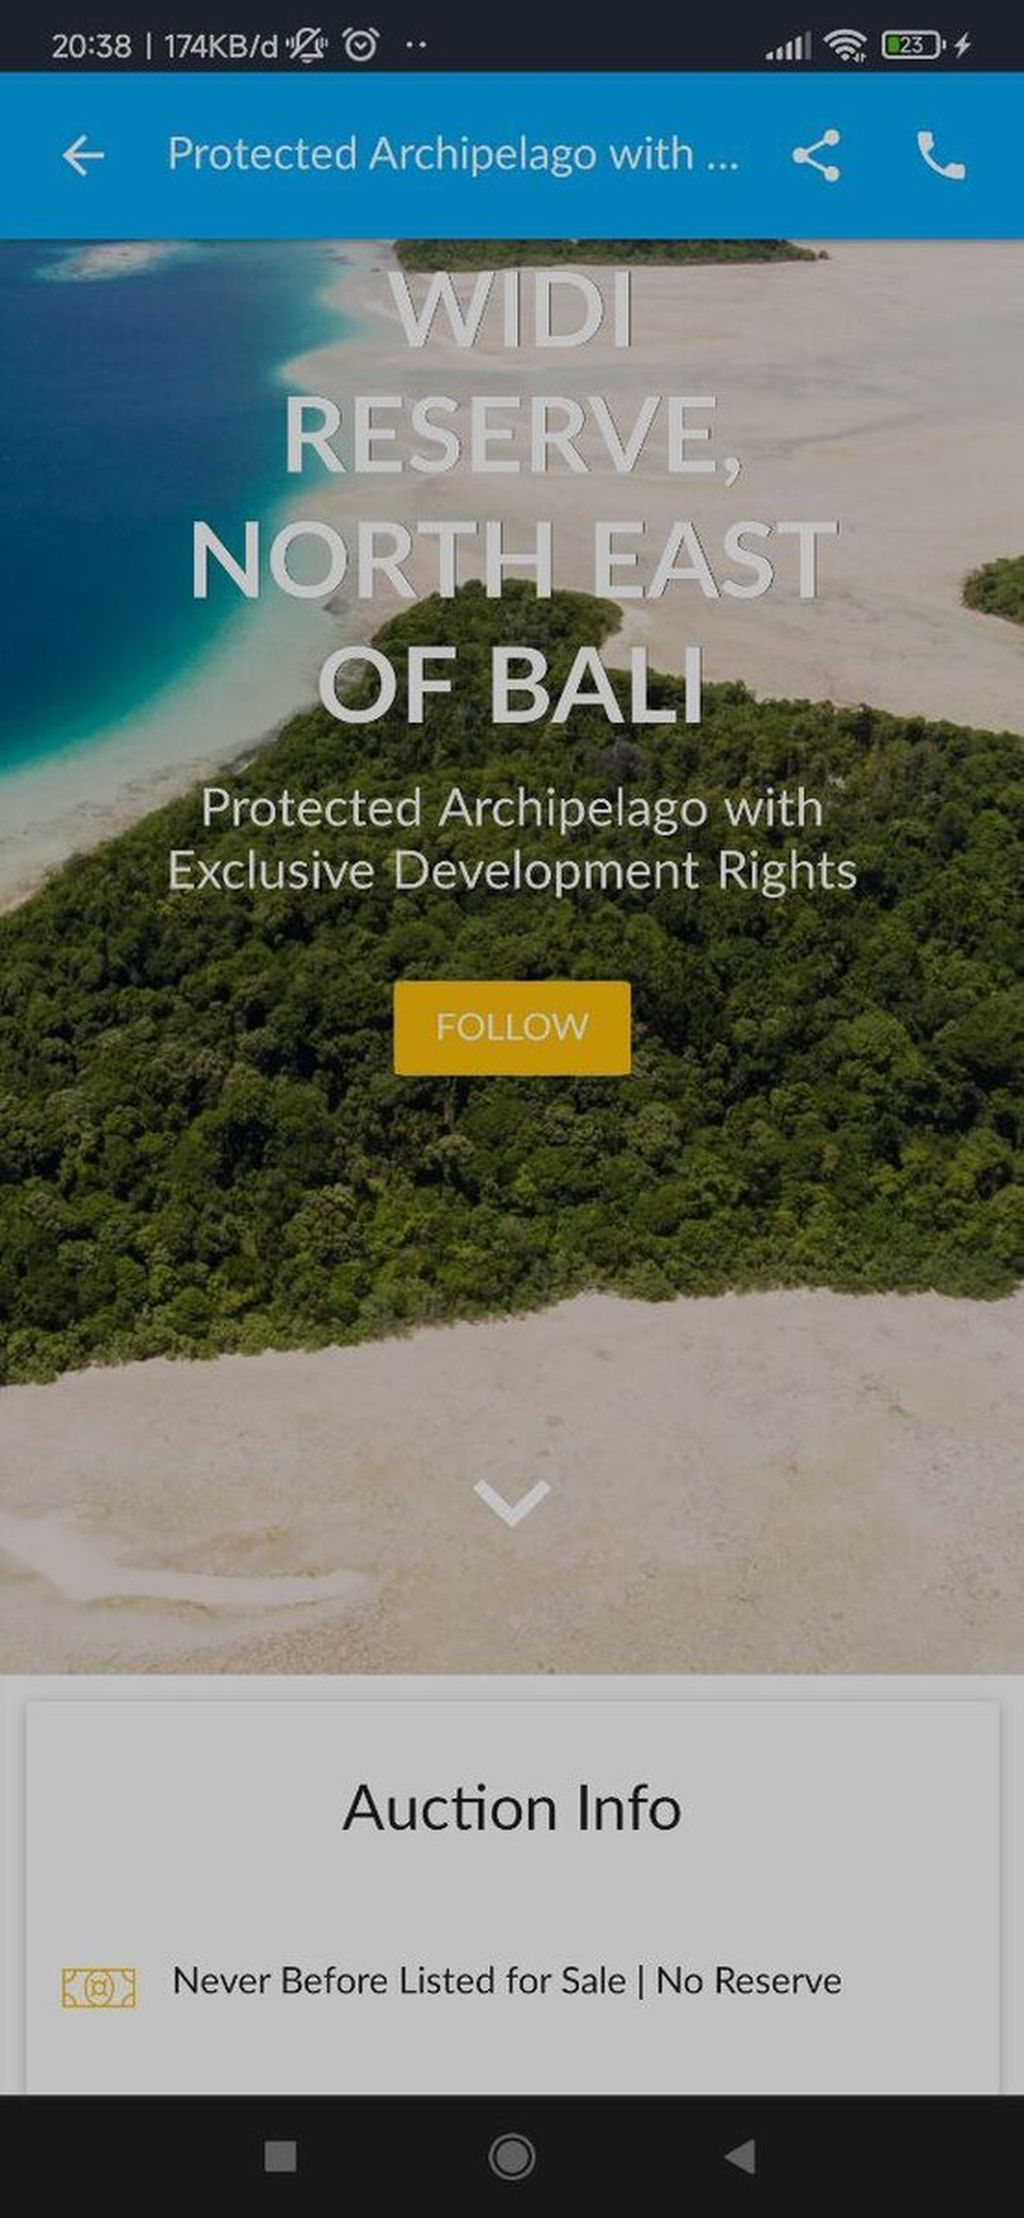 Tangkapan layar situs daring www.casothebys.com mengiklankan lelang penjualan Kepulauan Widi yang berada di timur laut Bali. Kepulauan Widi adalah gugusan pulau yang merupakan area konservasi hutan dan laut yang dilindungi. 